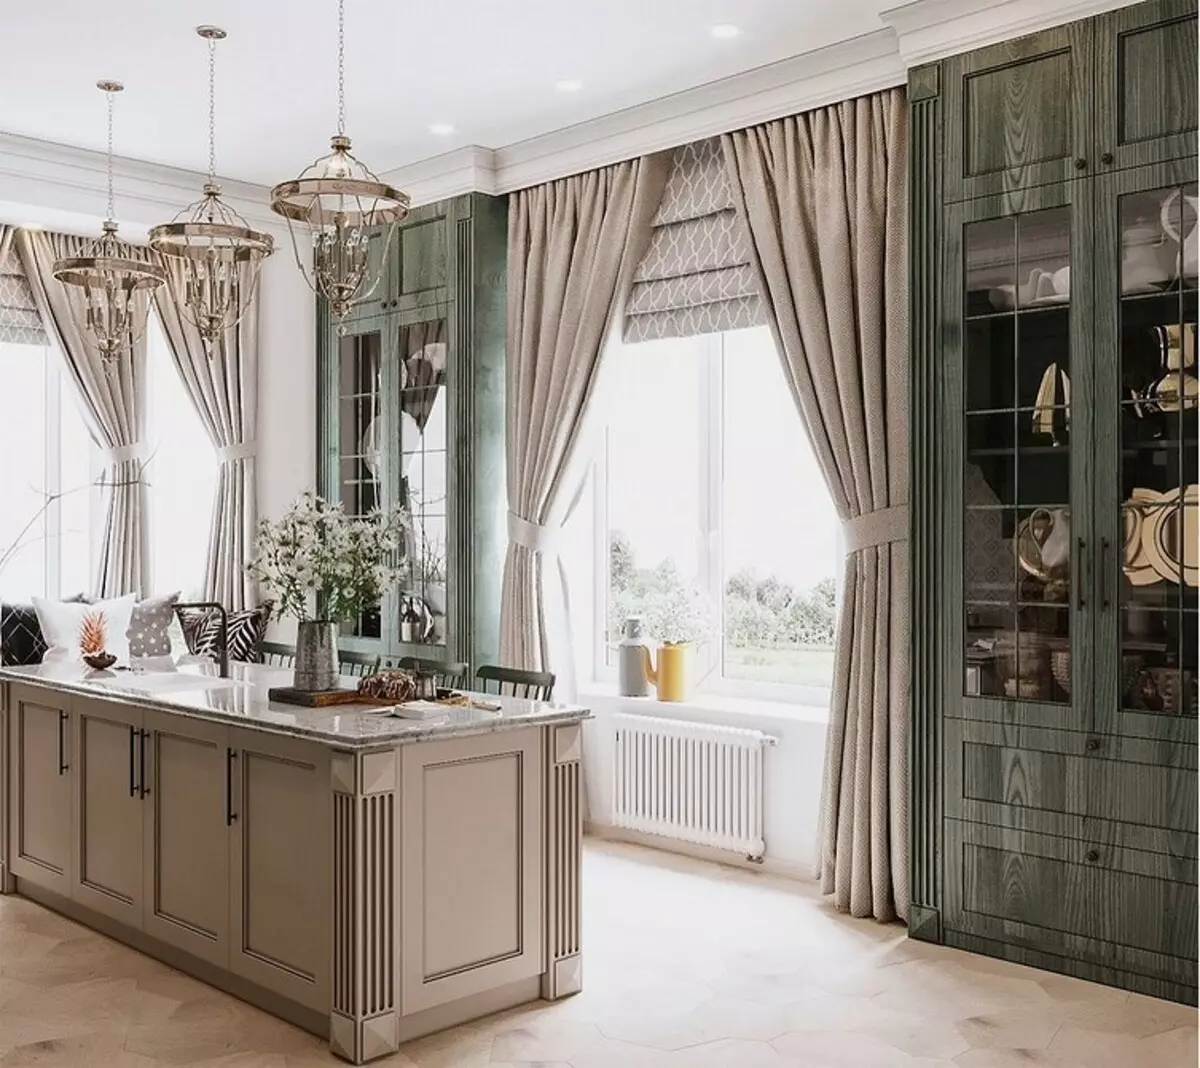 Bella decoració de finestres a la cuina: considereu el tipus de bucle i l'estil interior 4732_54